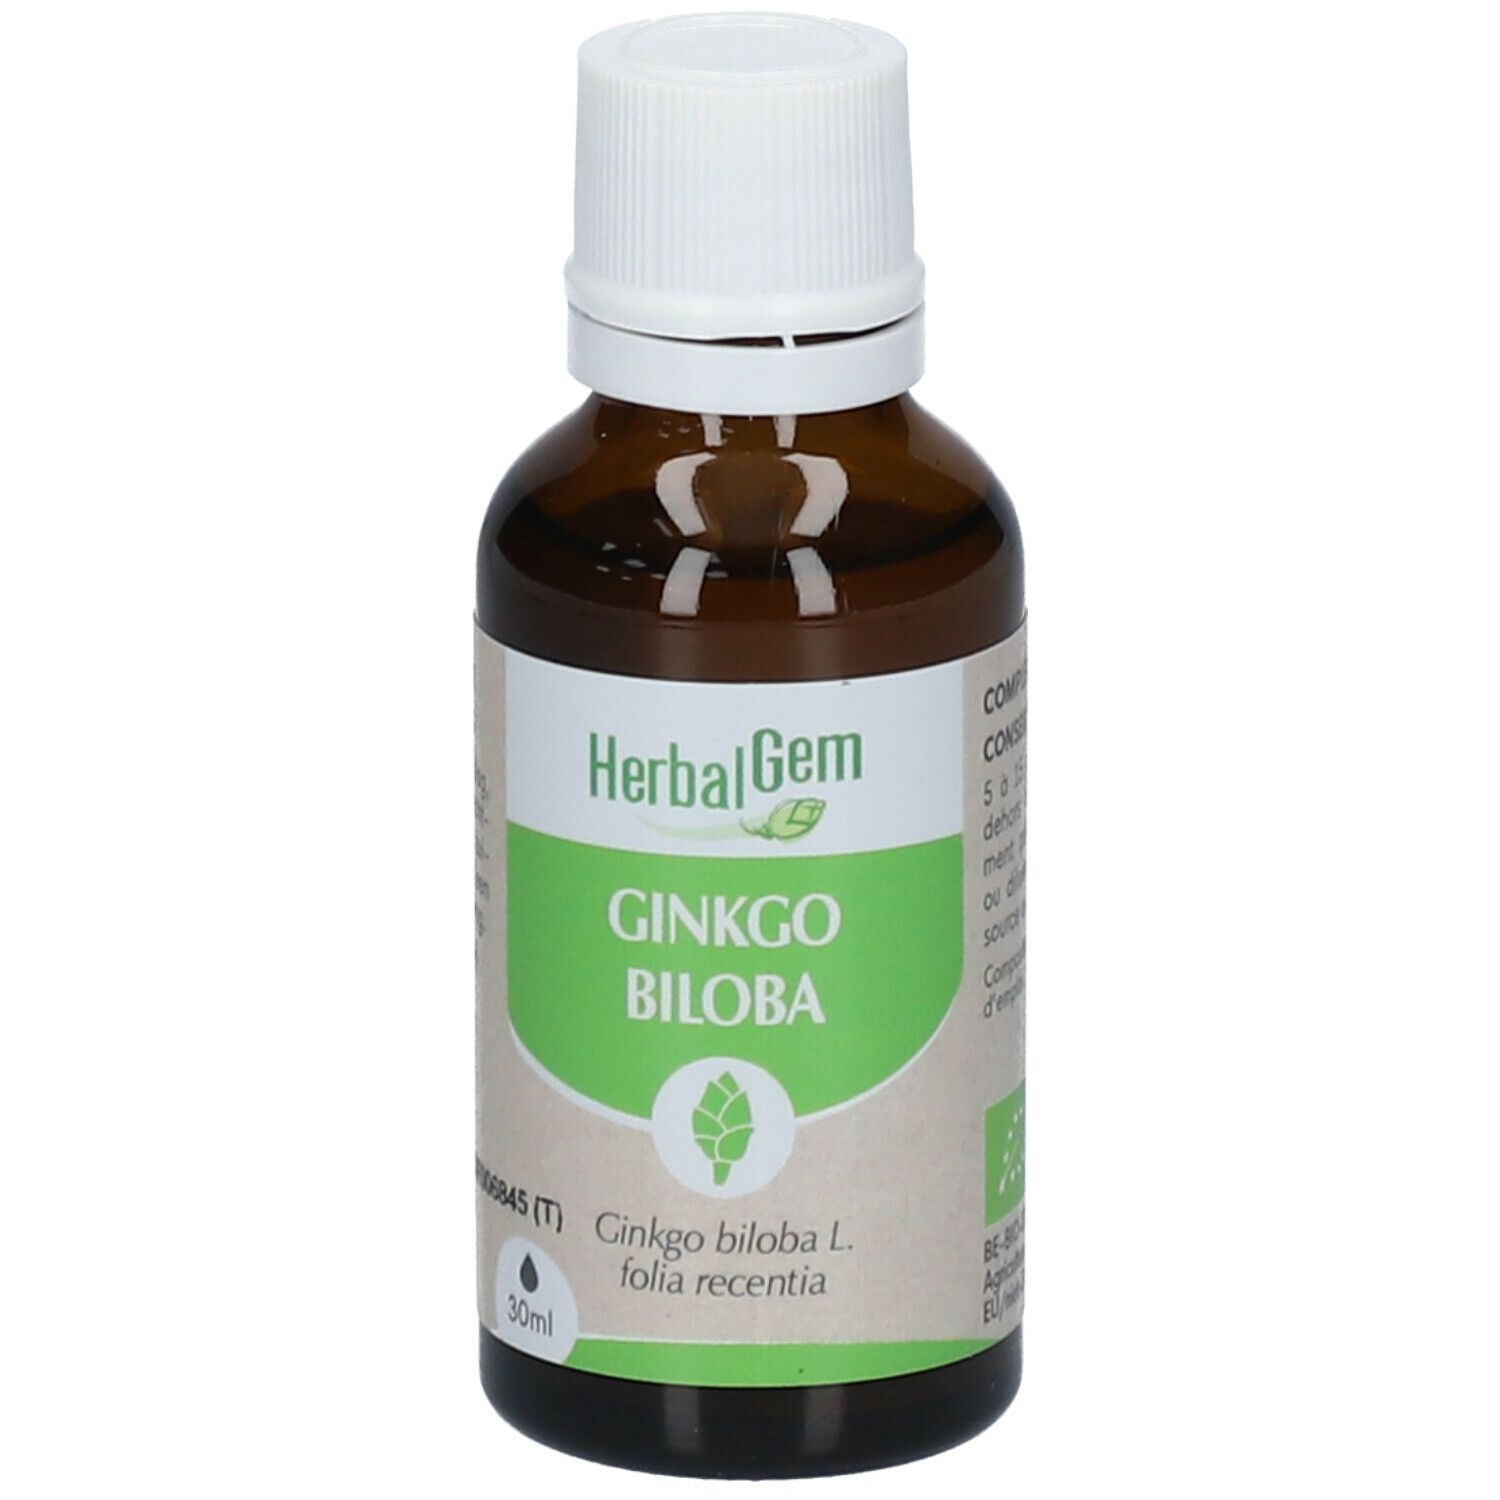 Herbalgem - Ginkgo Biloba Bio - Complément Alimentaire - Extrait De Bourgeon Frais - Pour Circulation Sanguine, Mémoire & Concentration - 30 ml